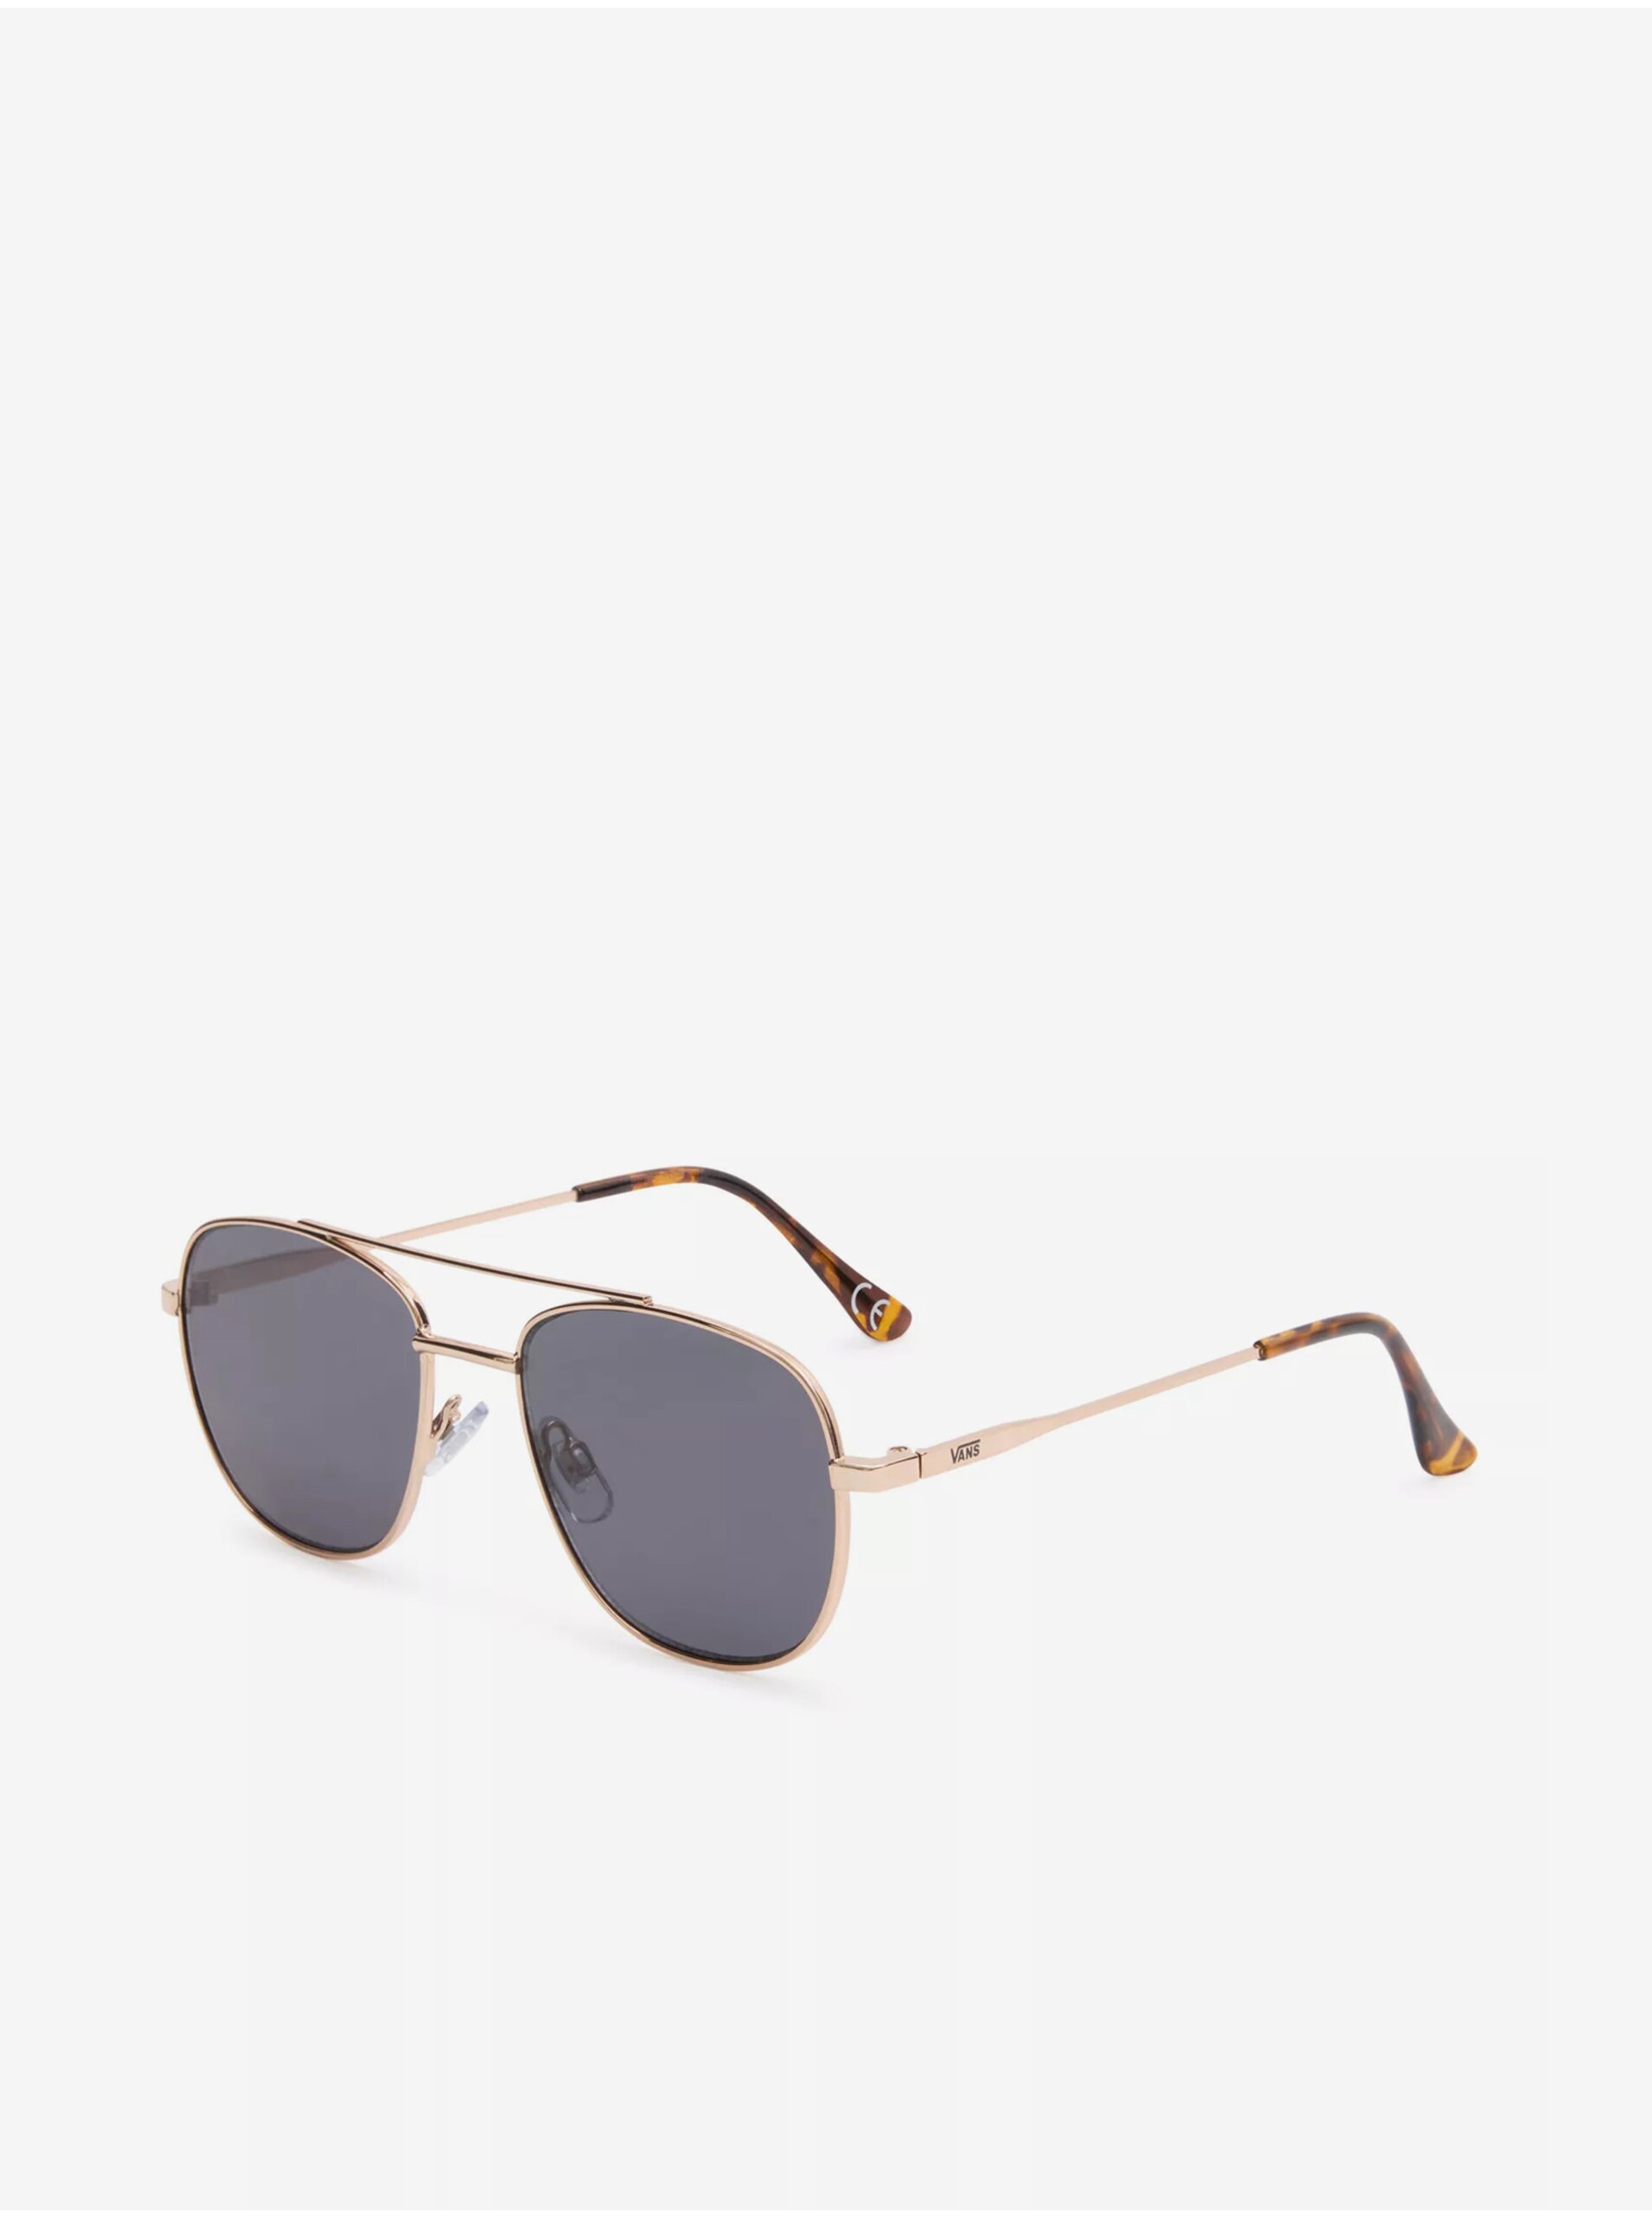 E-shop Dámské sluneční brýle s obroučkami ve zlaté barvě VANS Chipper